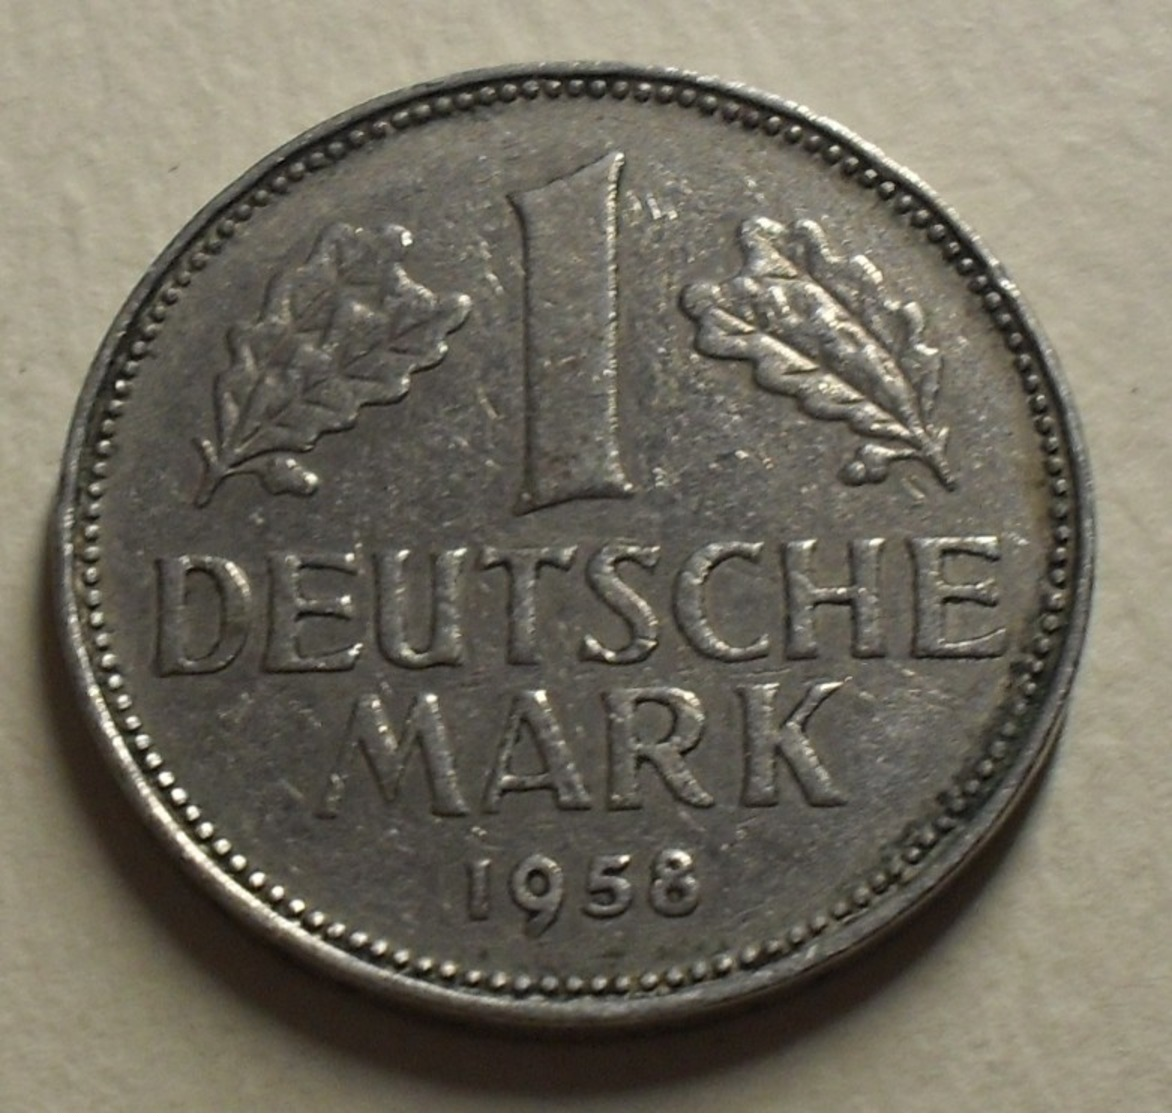 1958 - Allemagne - Germany - 1 MARK, (J) KM 110 - 1 Mark